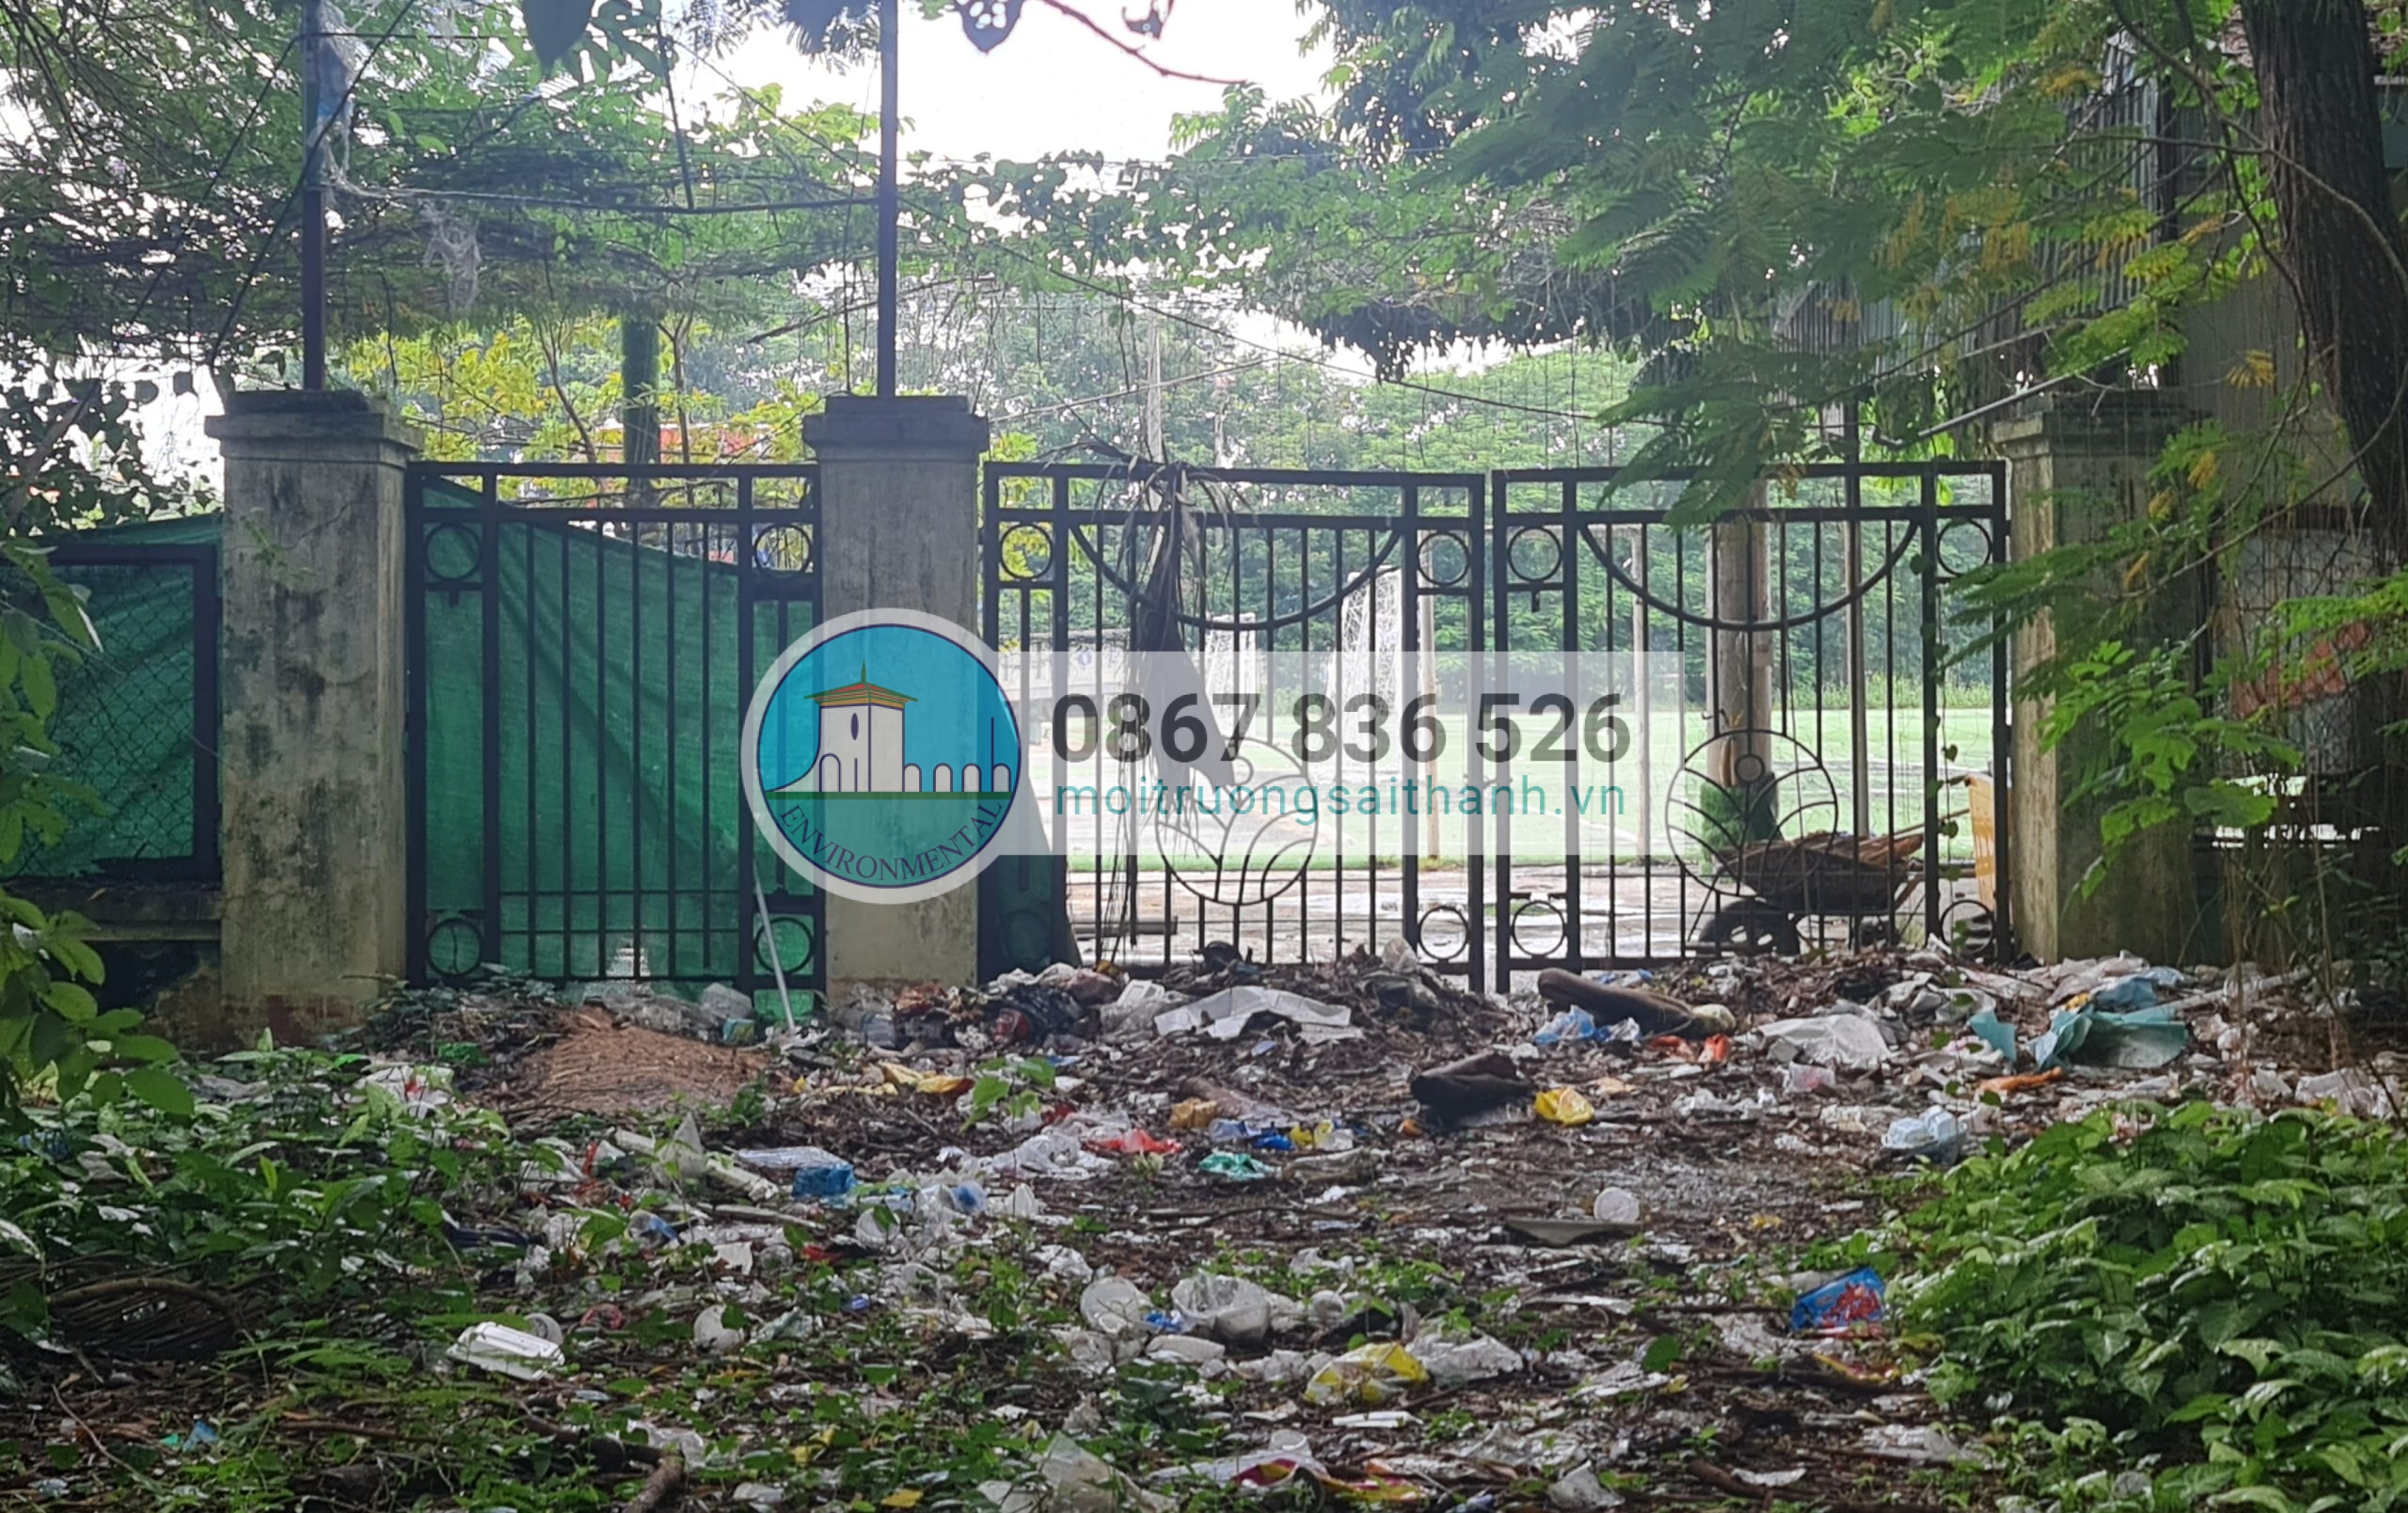 Đủ các loại rác thải bủa vây trong khuôn viên công viên Hội An